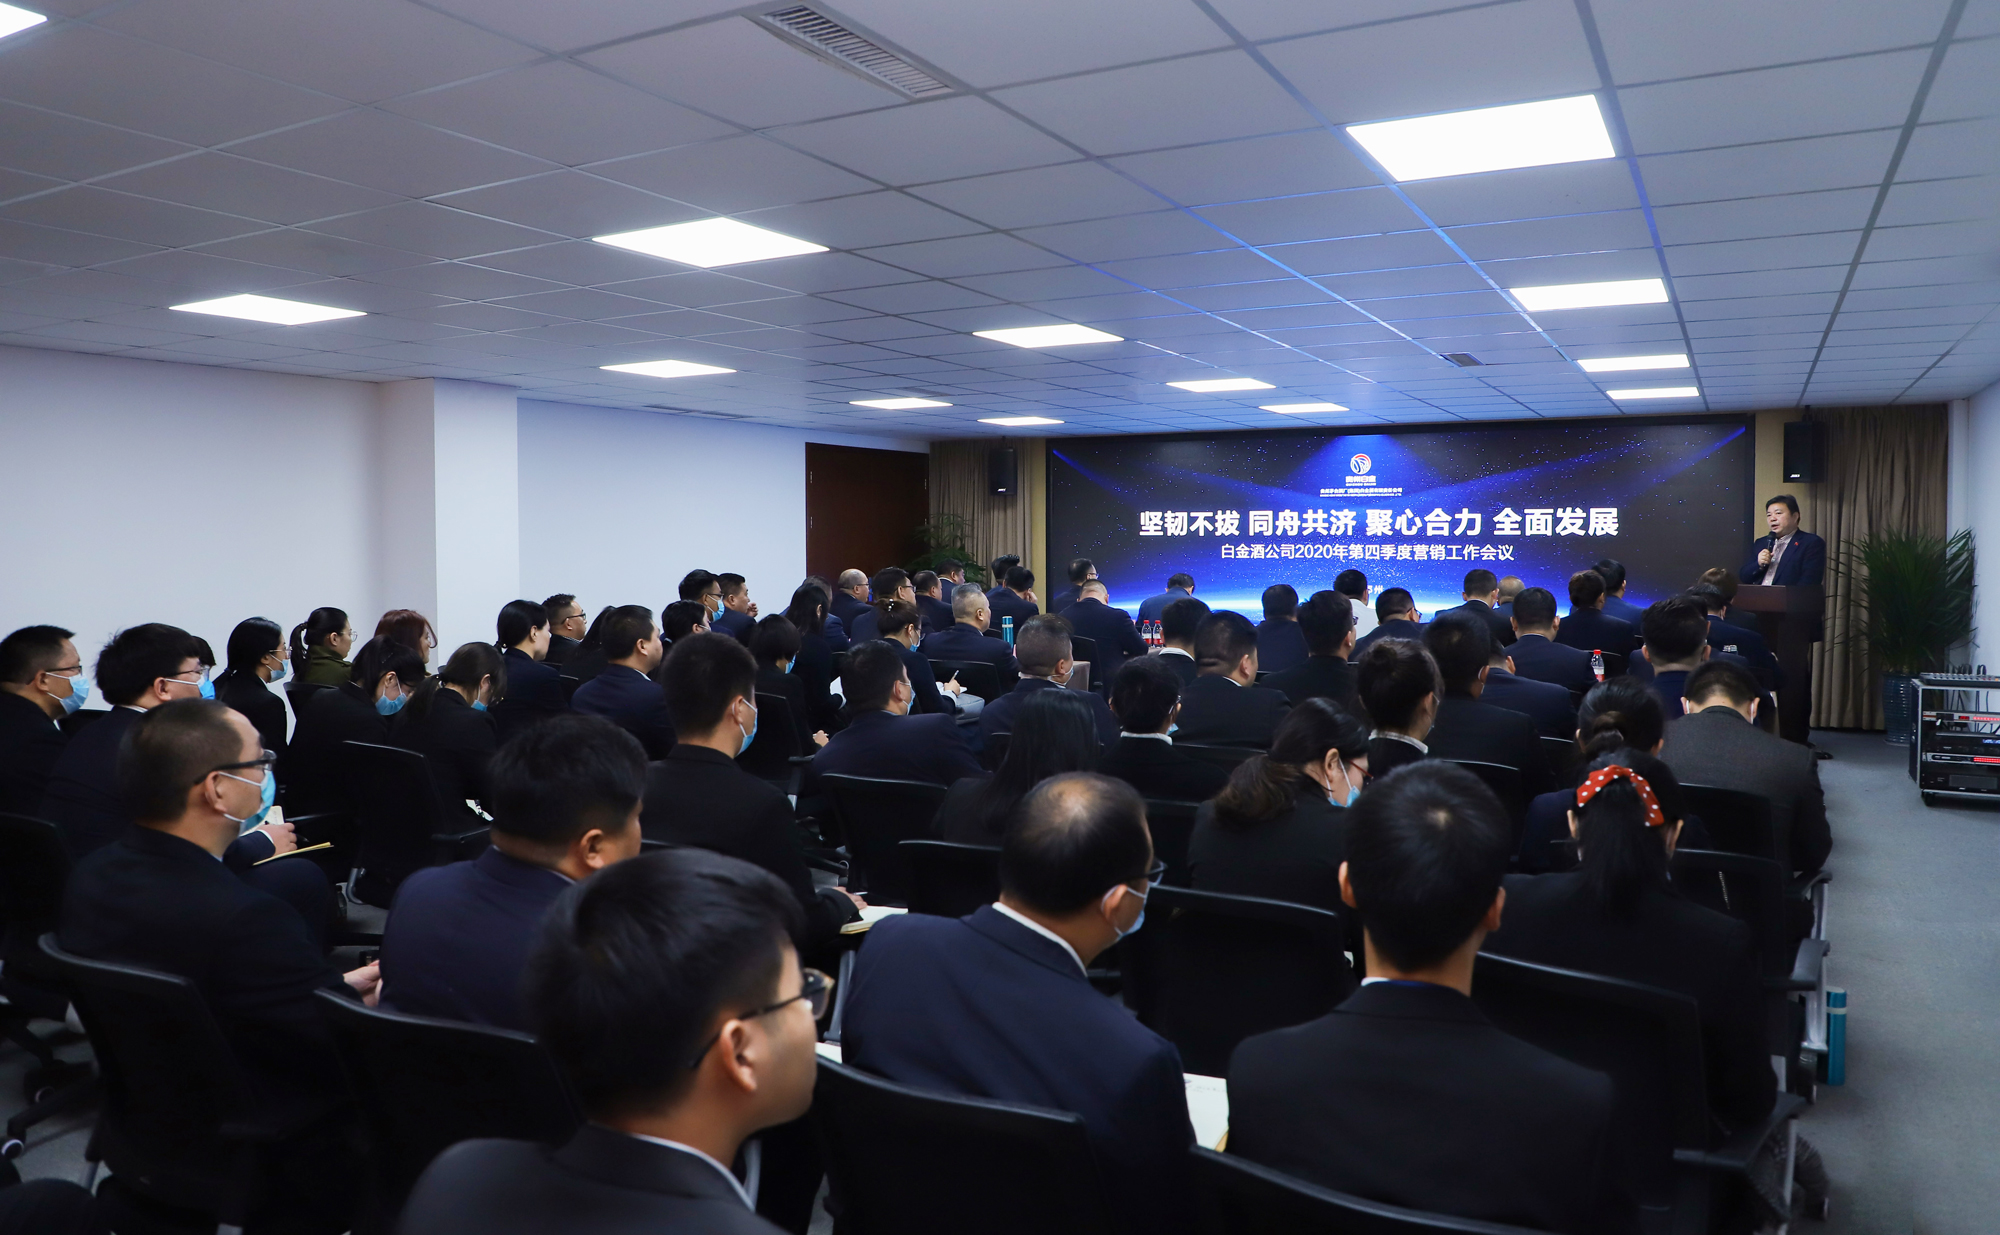 坚韧不拔 同舟共济 聚心合力 全面发展 白金酒公司2020年第四季度营销工作会议在郑州举行